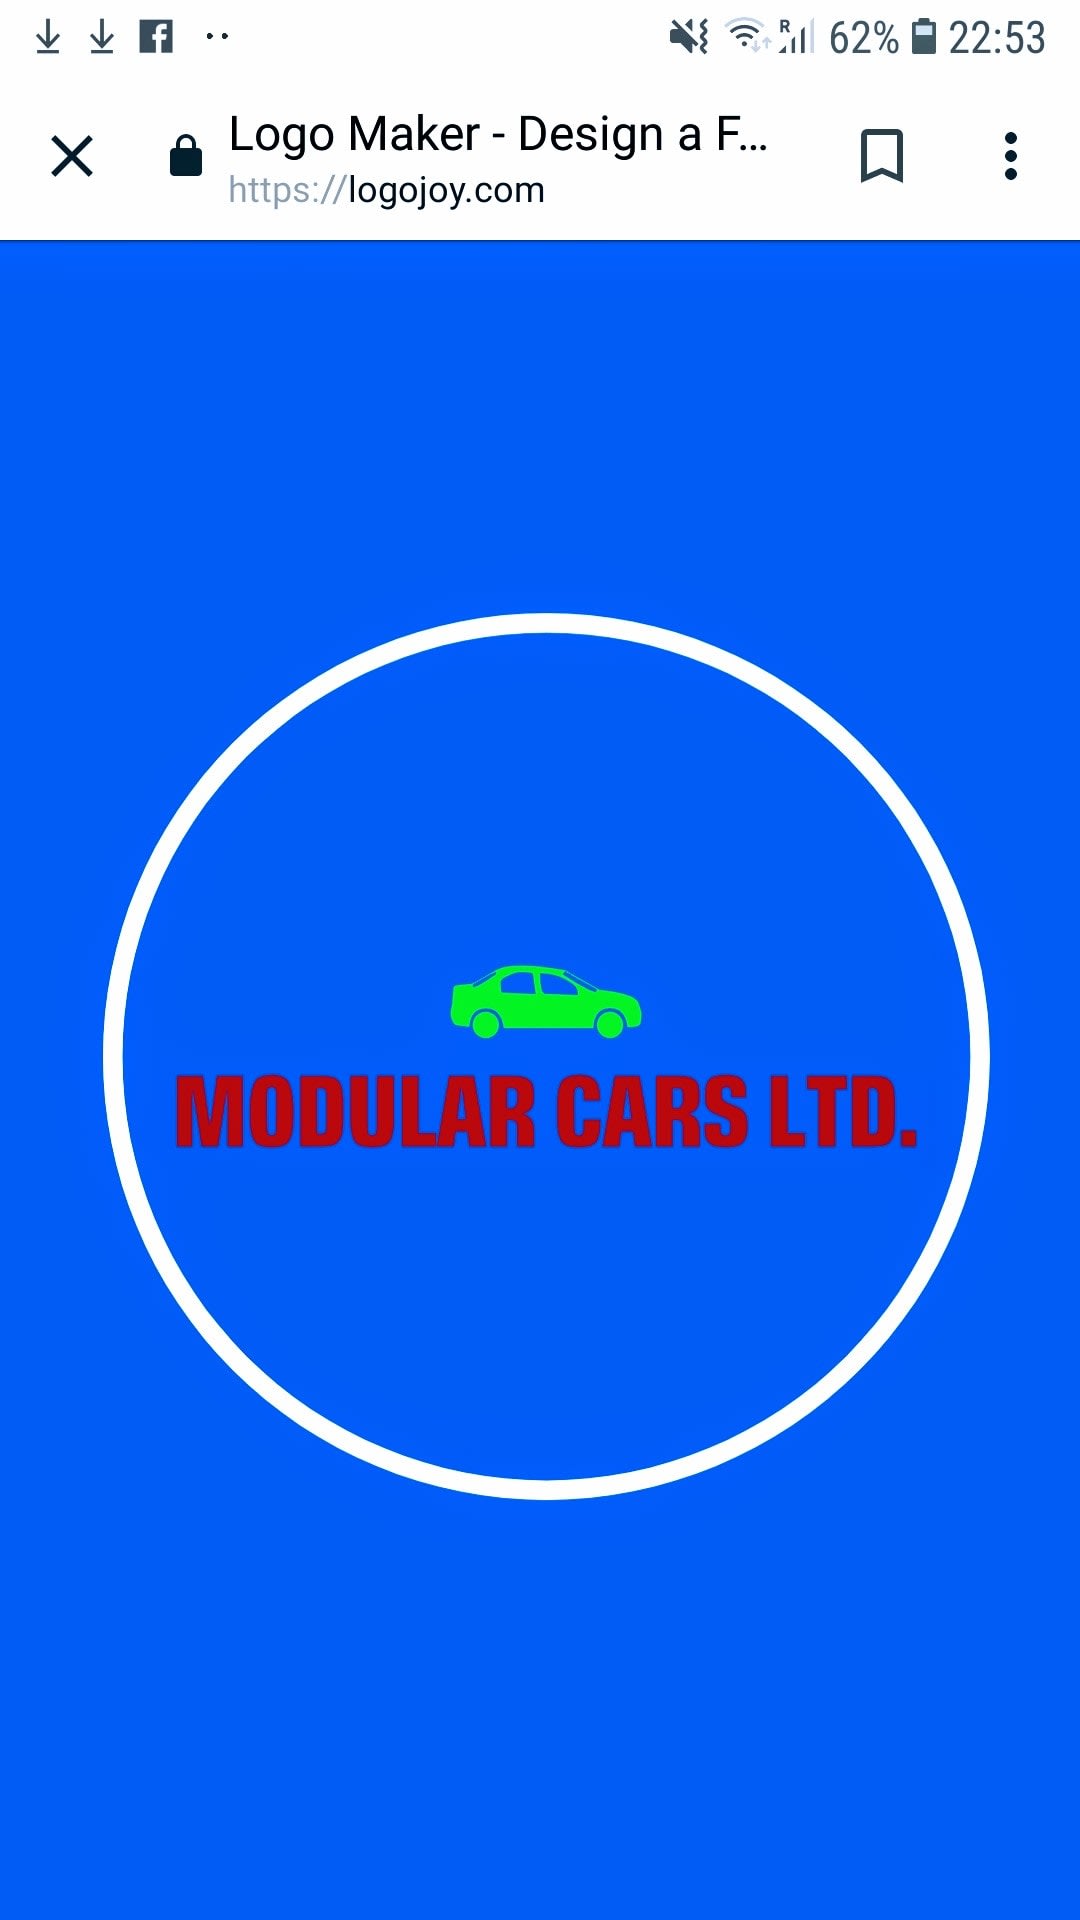 Modular Cars Ltd